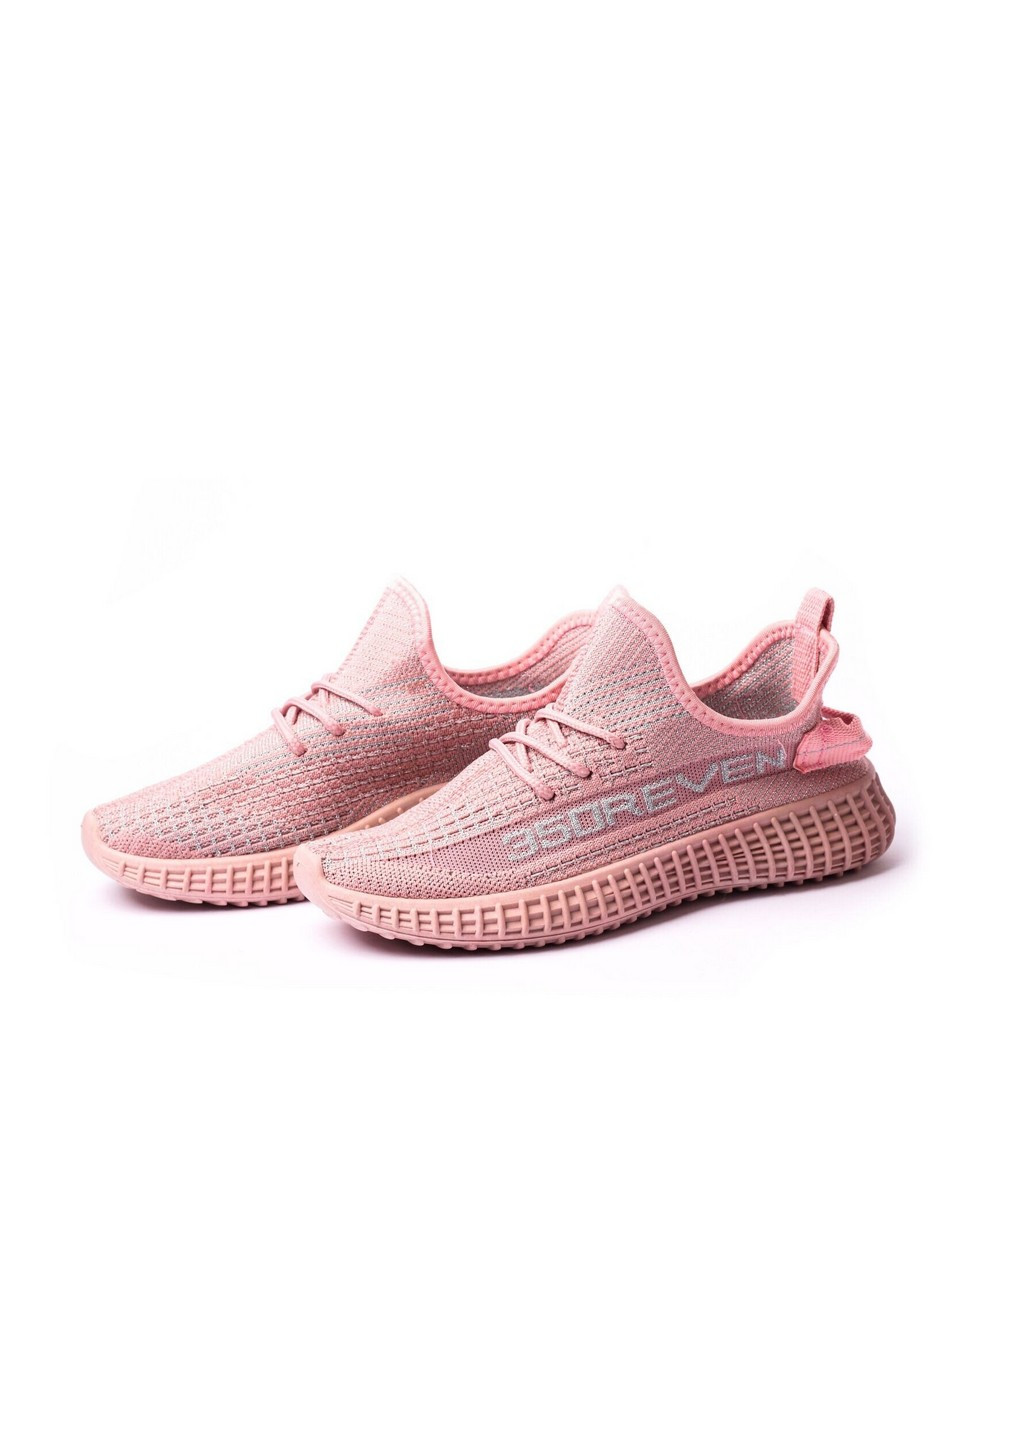 Розовые демисезонные кроссовки детские, для девочки, 36 размер 2000903135067 Erra